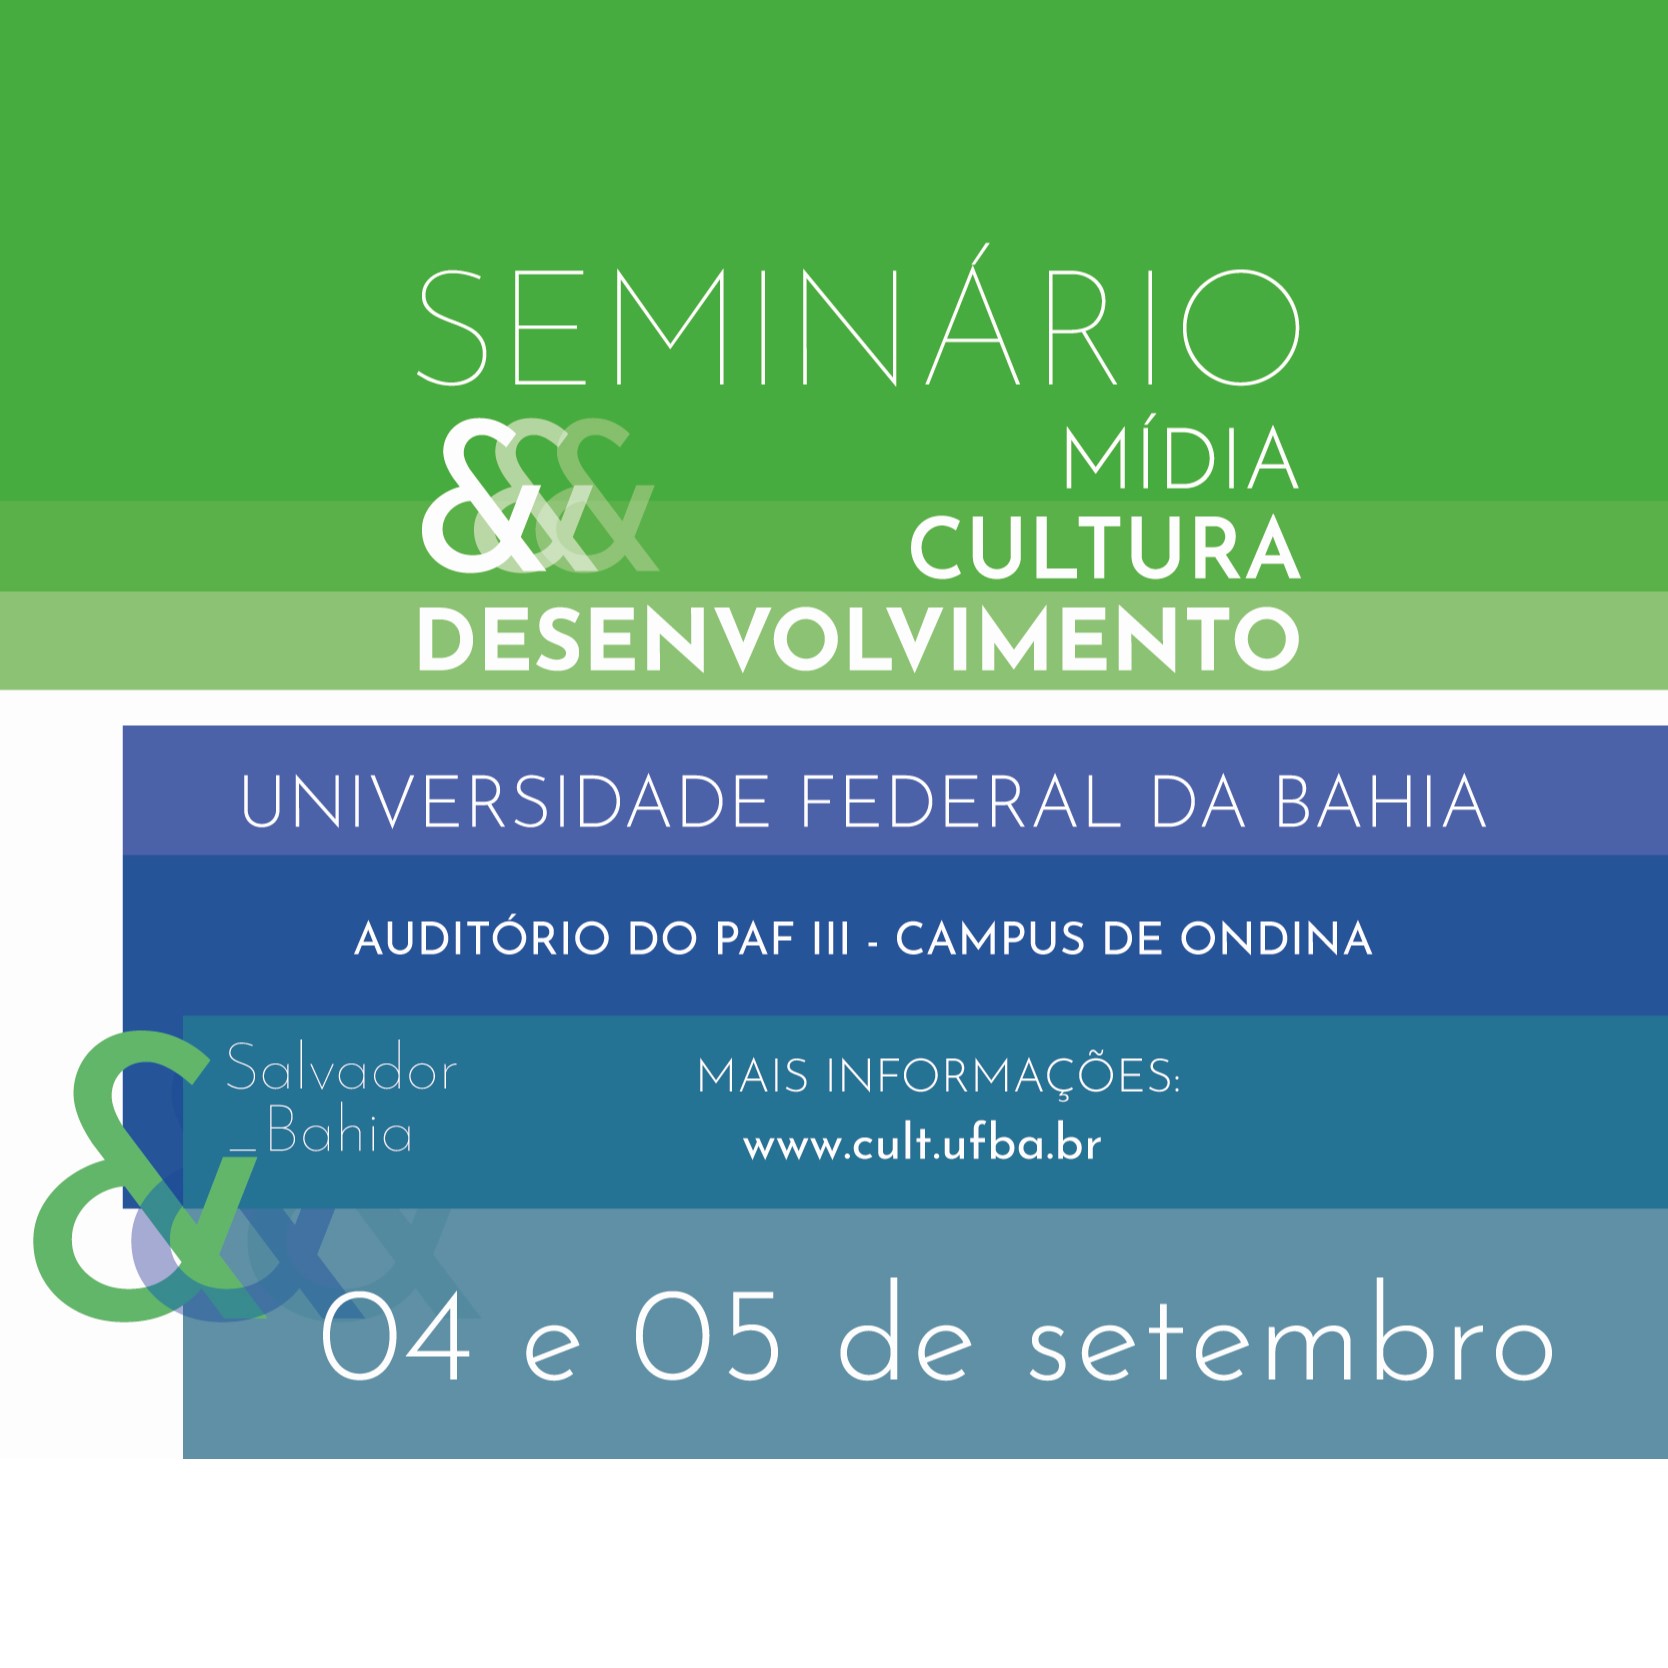 Seminário Mídia, Cultura e Desenvolvimento acontece em setembro na UFBA